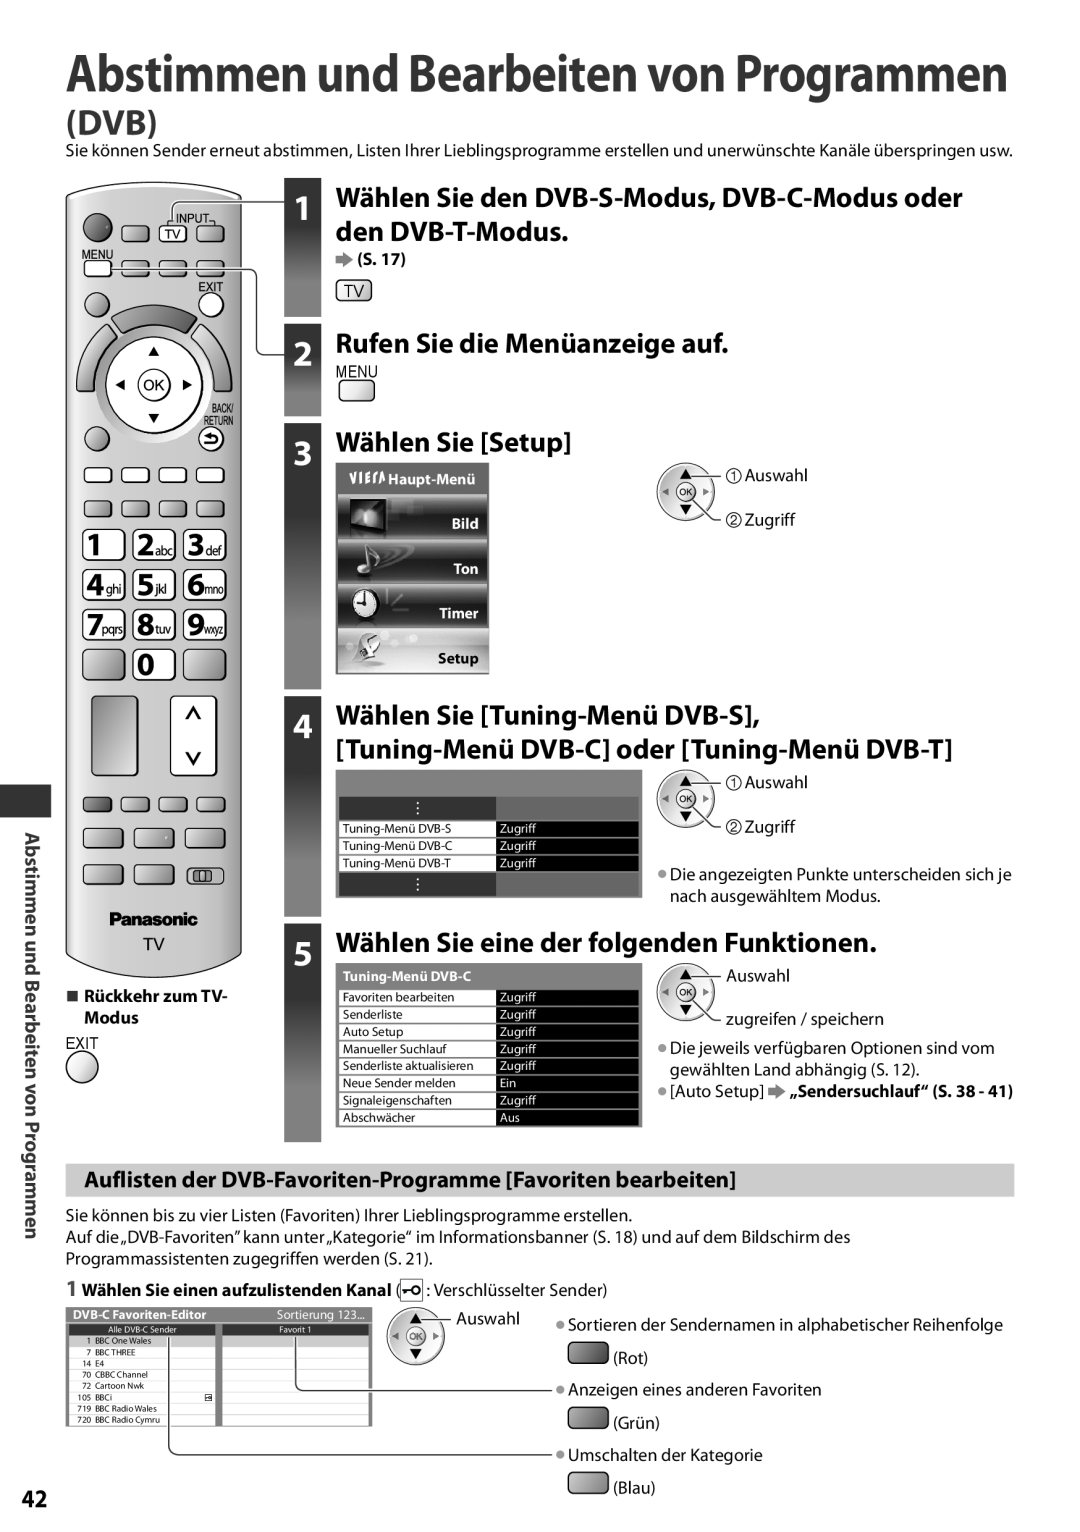 Panasonic TX-L42EF32 Abstimmen und Bearbeiten von Programmen, 5 Wählen Sie eine der folgenden Funktionen, Zugriff, Auswahl 